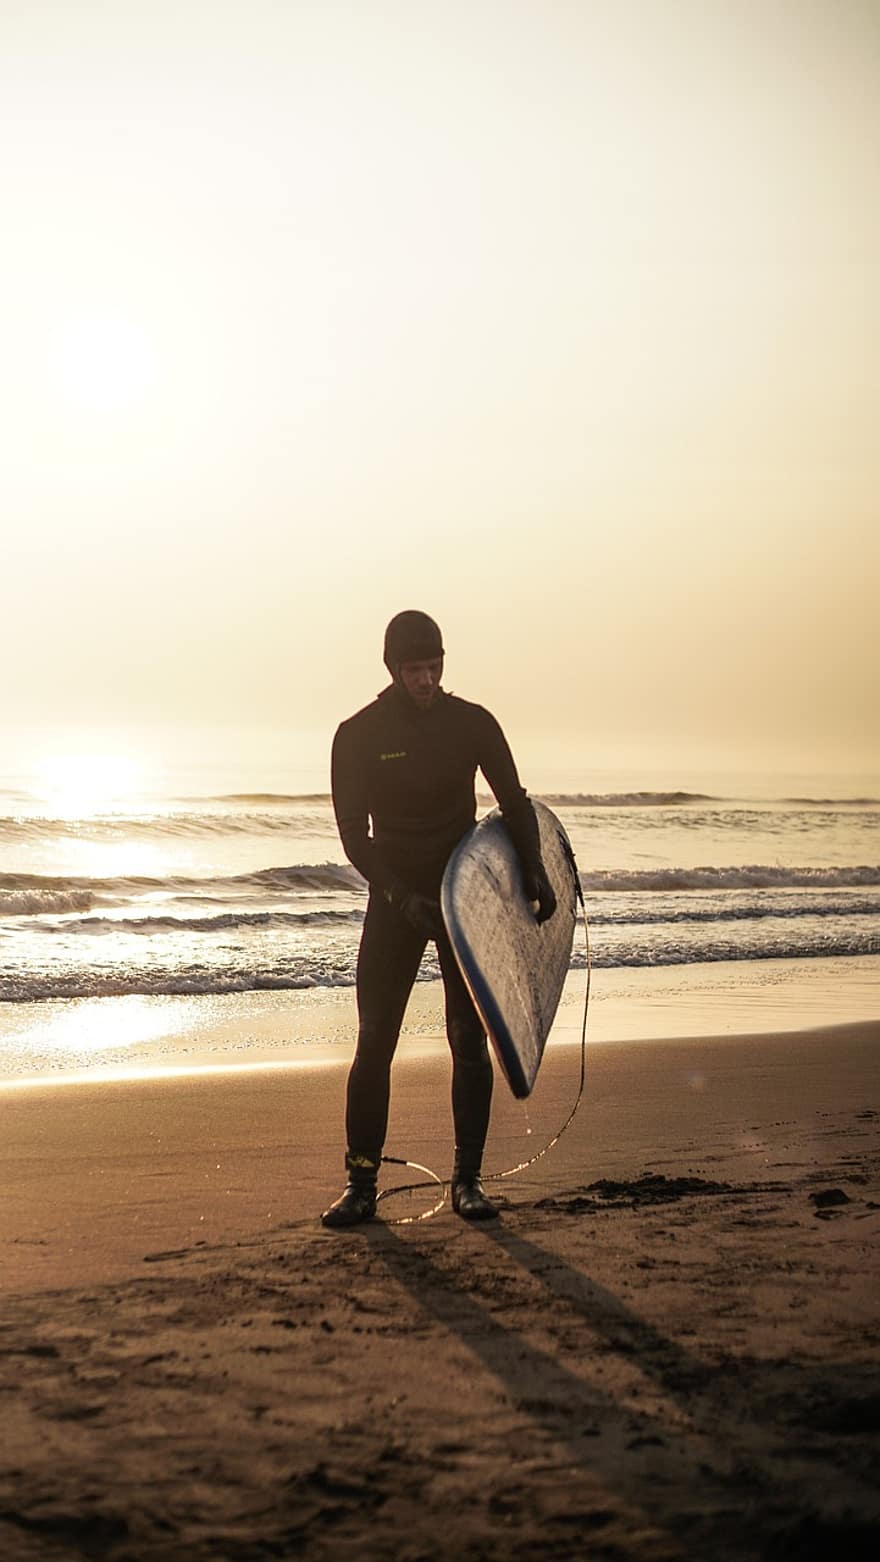 sörf yapmak, plaj, gün batımı, sörfçü, sörf, deniz, erkekler, yetişkin, bir kişi, yaşam, spor